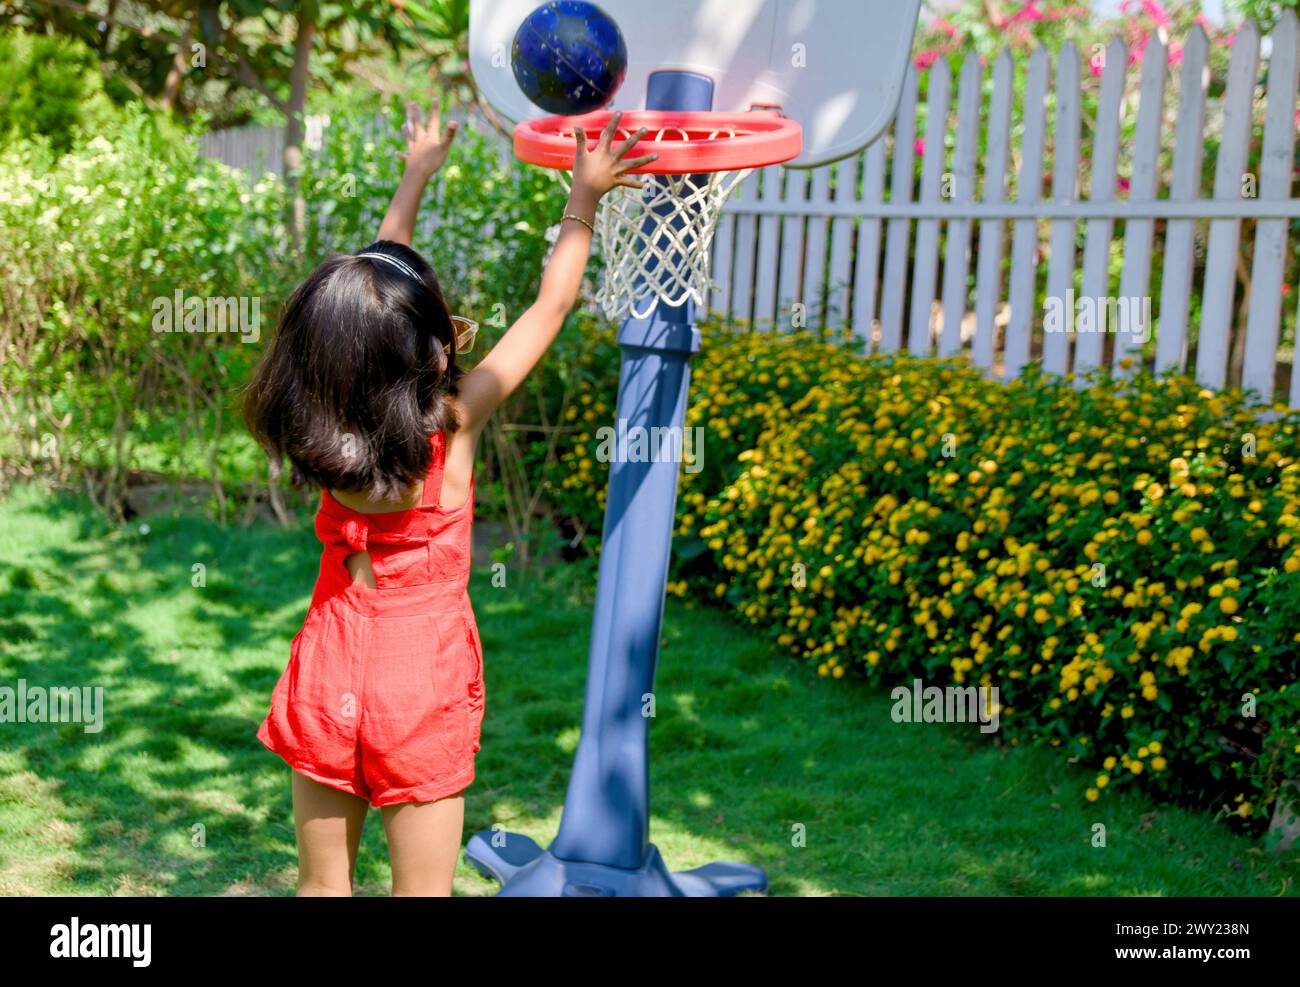 Ein kleines Mädchen mit einem entschlossenen Ausdruck tröpfelt einen Basketball an einem sonnigen Tag in ihrem Garten Stockfoto